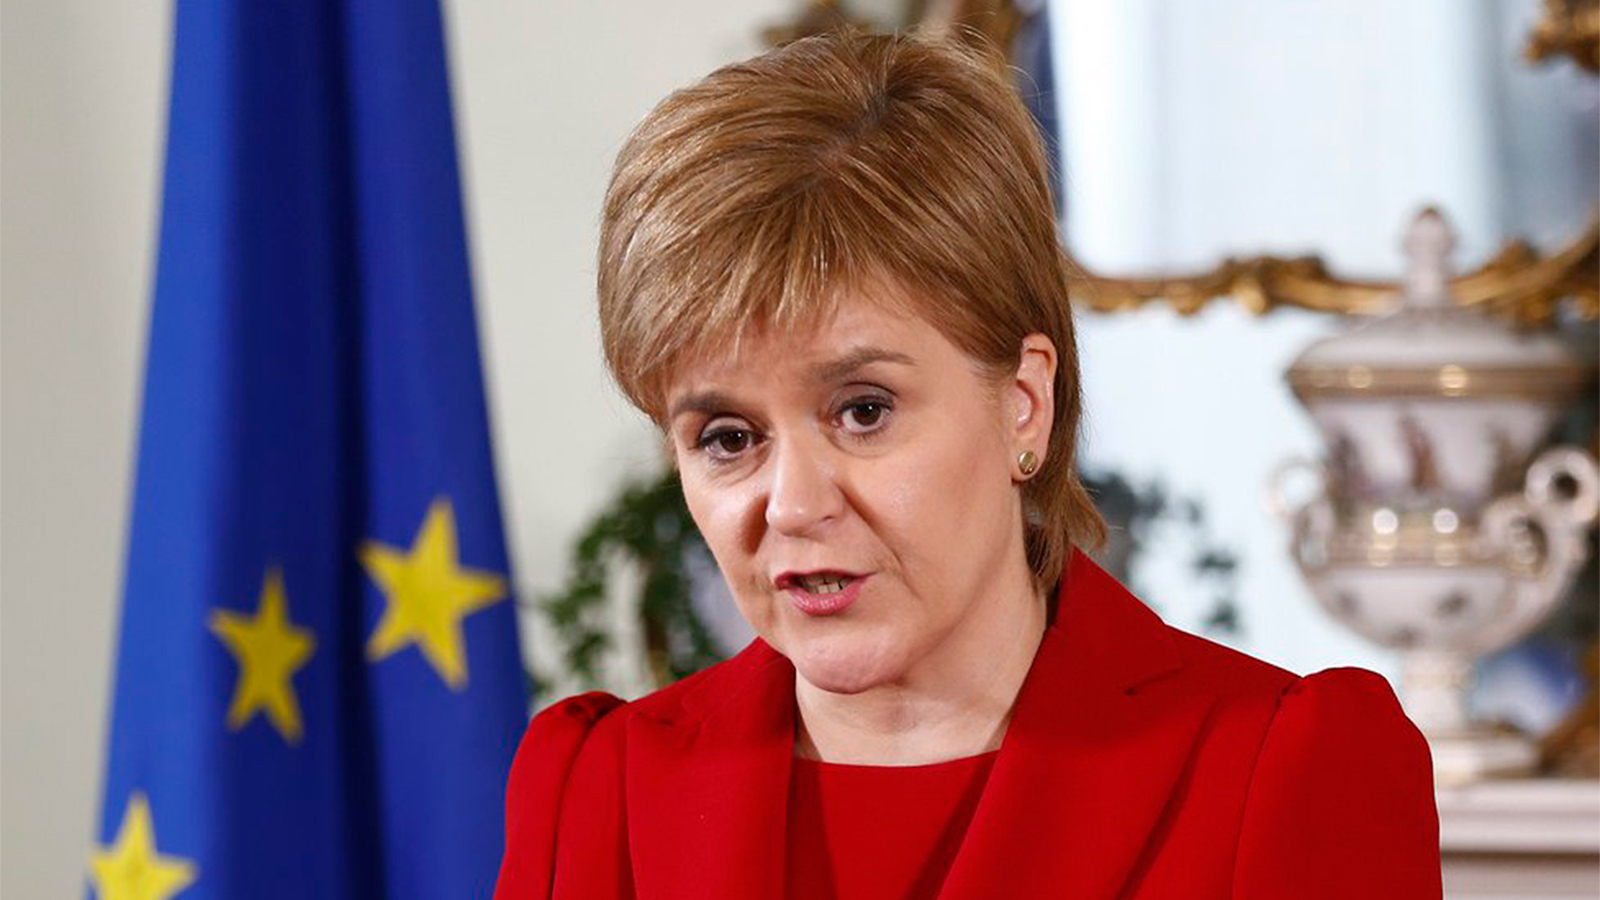 رئيسة وزراء أسكتلندا نيكولا ستيرغن: استقلال الإقليم بات أقرب من أي وقت مضى (التواصل الاجتماعي)